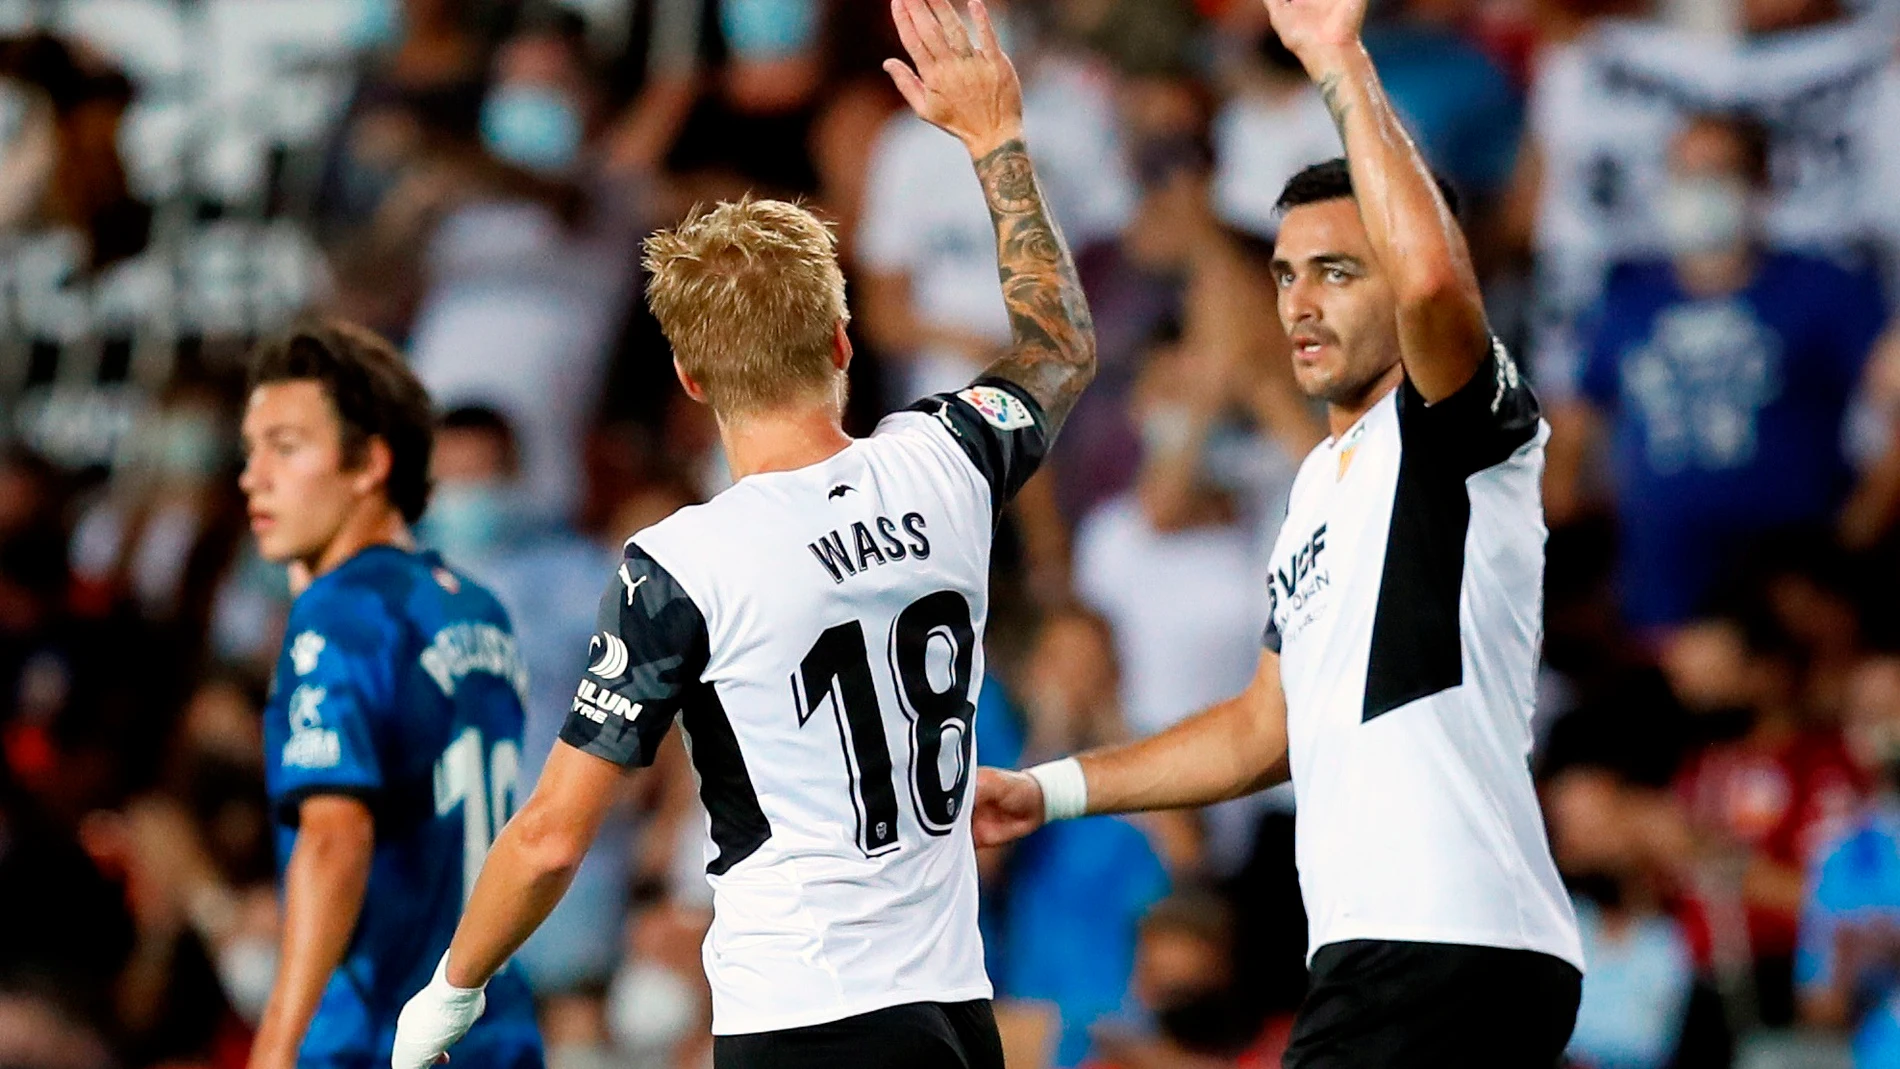 El jugador del Valencia, Daniel Wass es felicitado por sus compañeros tras marcar el primer gol ante el Alavés durante el encuentro que les enfrenta en el estadio de Mestalla (Valencia) correspondiente al campeonato de liga